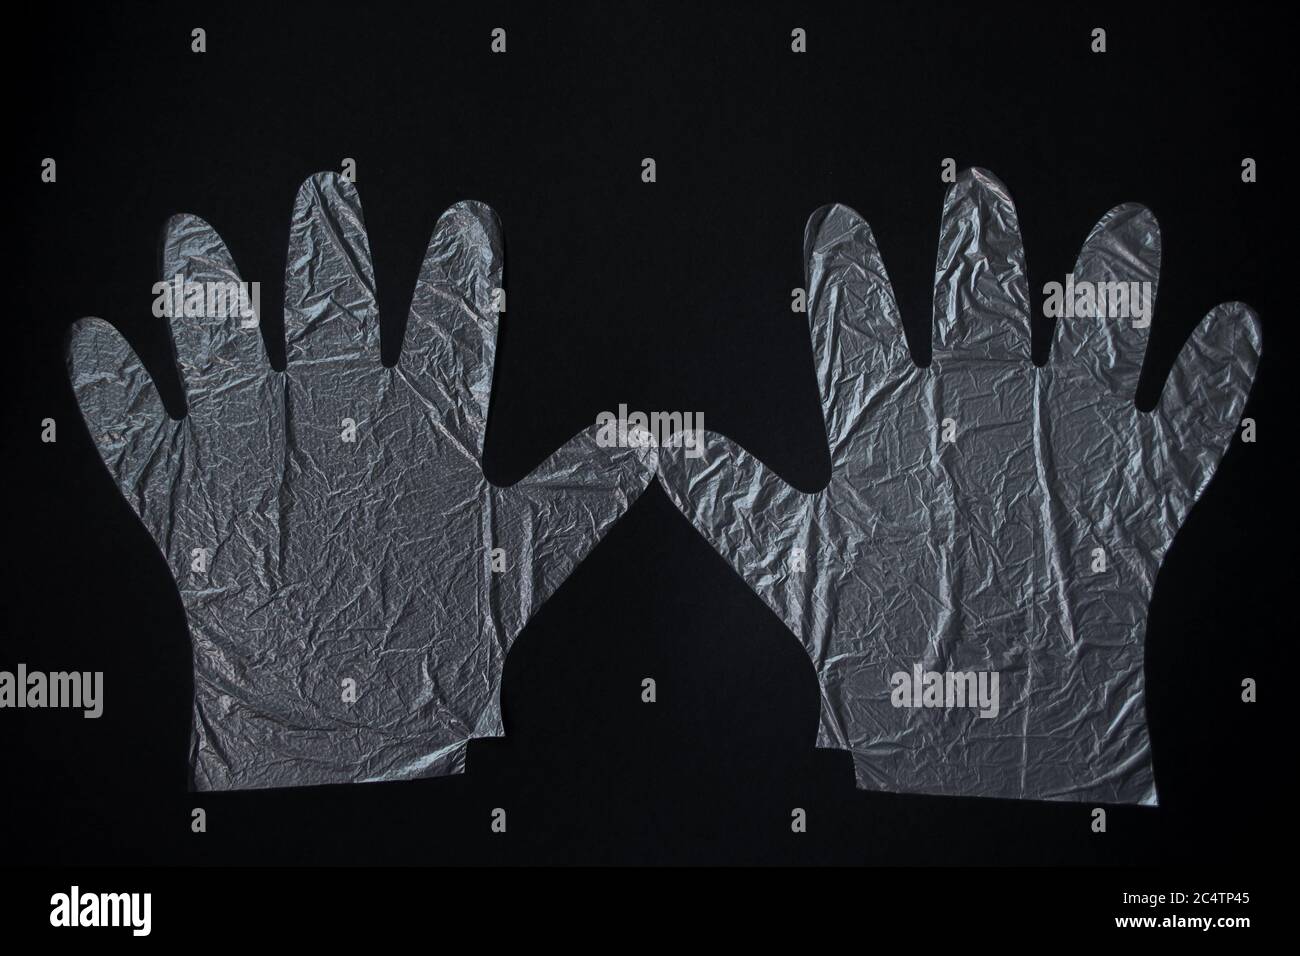 Une paire de gants en plastique jetables sur fond noir. Concept de protection. Banque D'Images